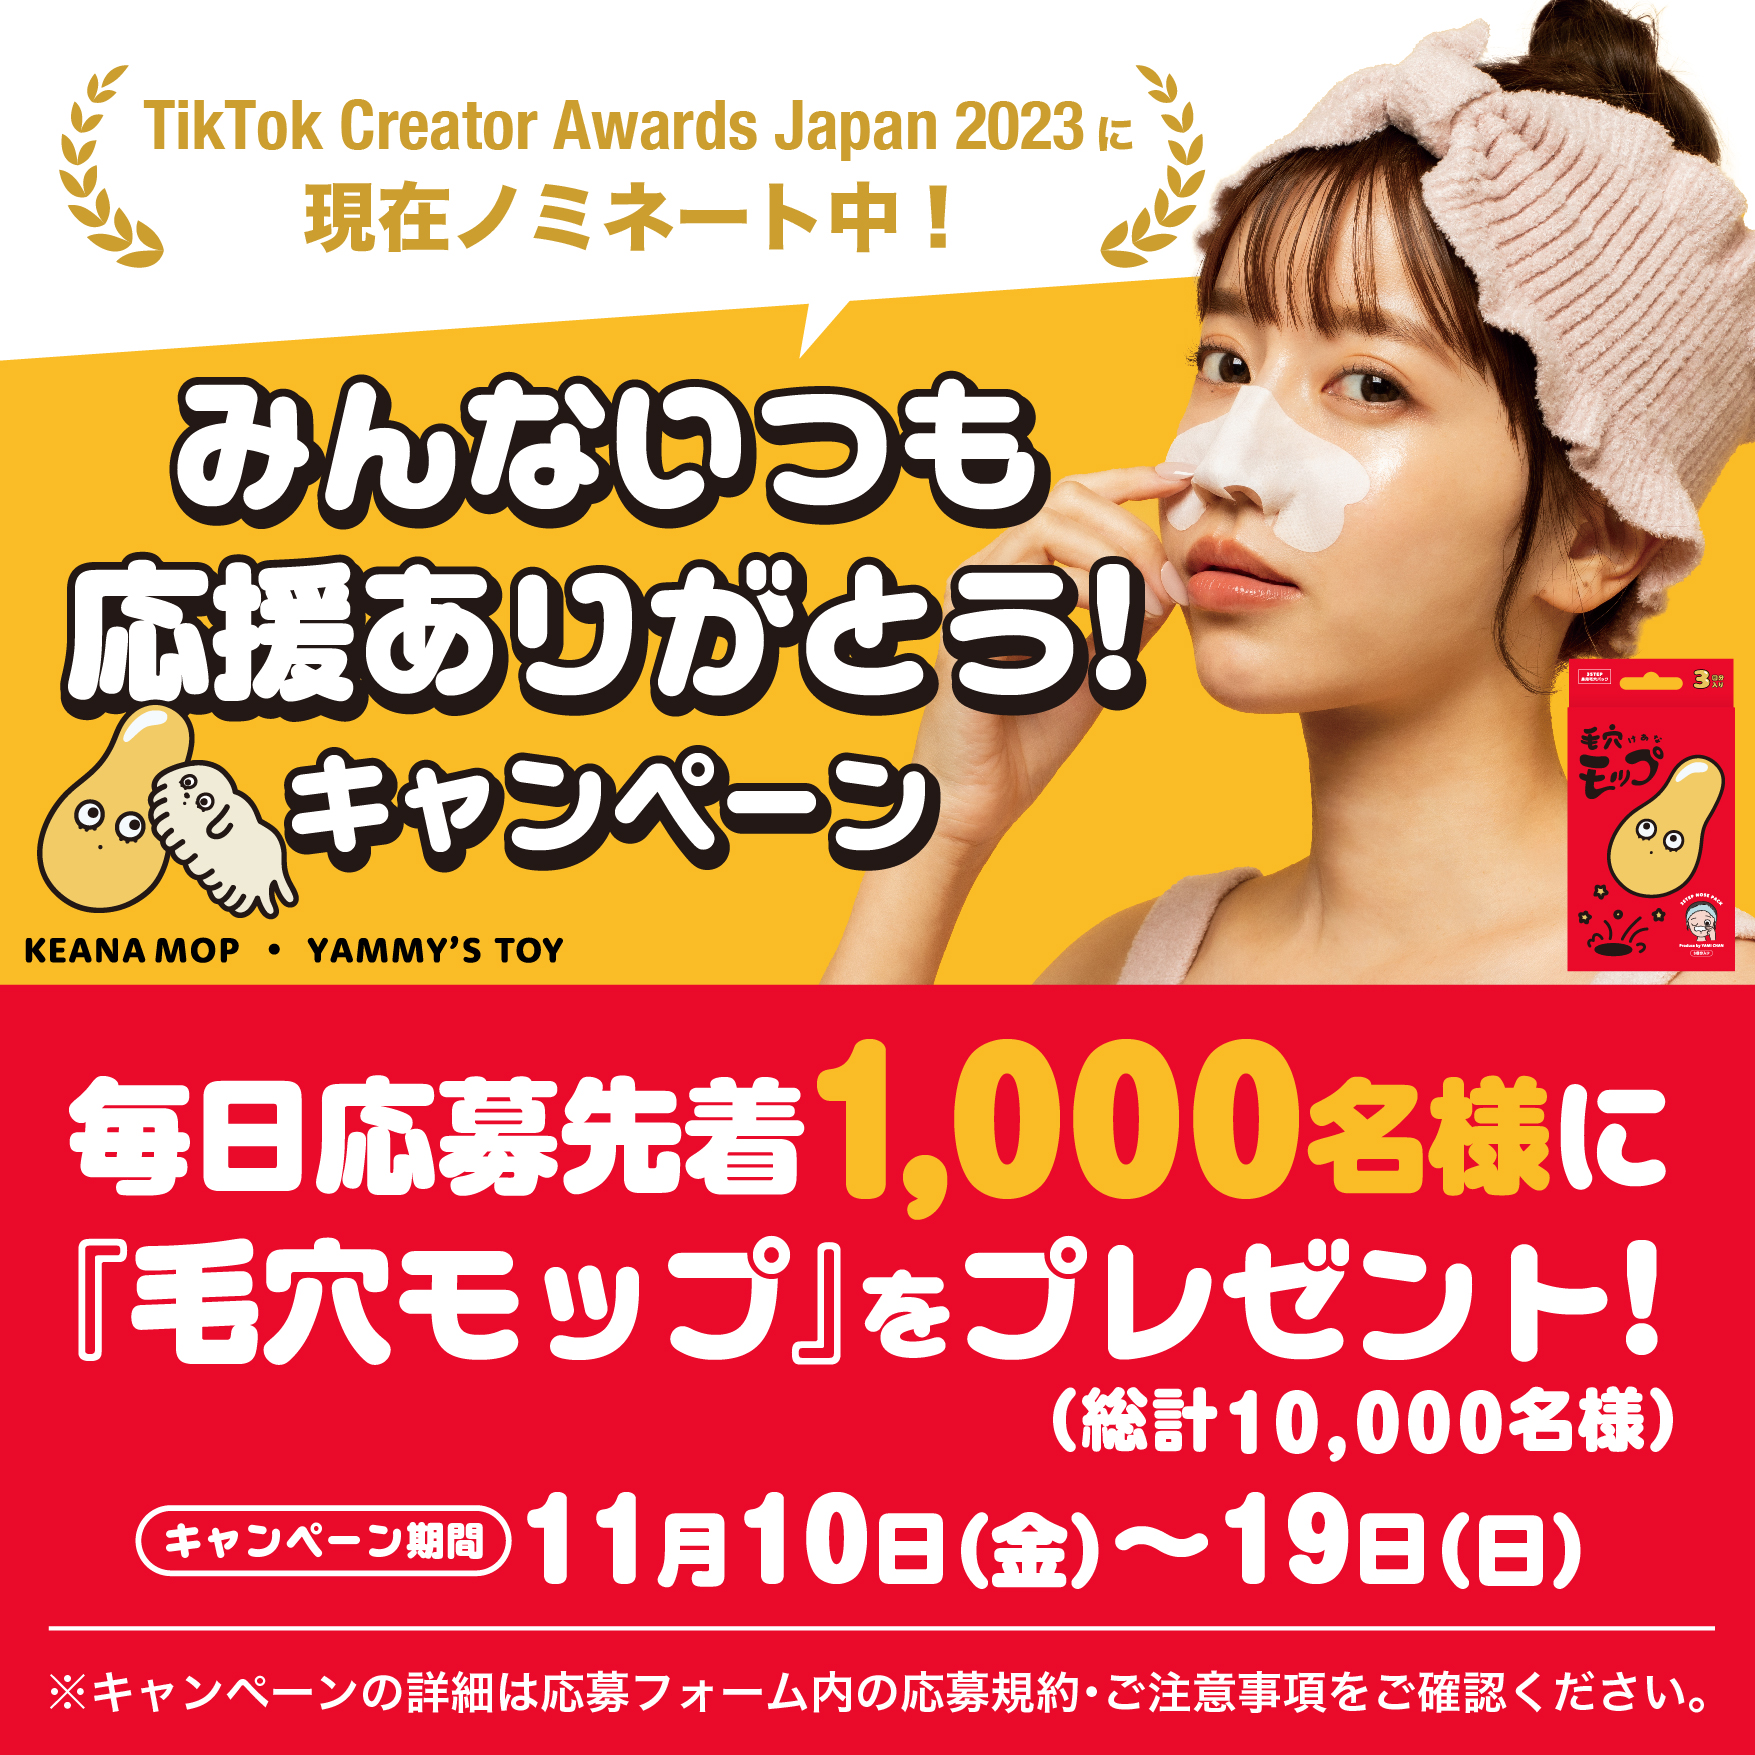 やみちゃん│「TikTok Creator Awards Japan 2023」に現在ノミネート中